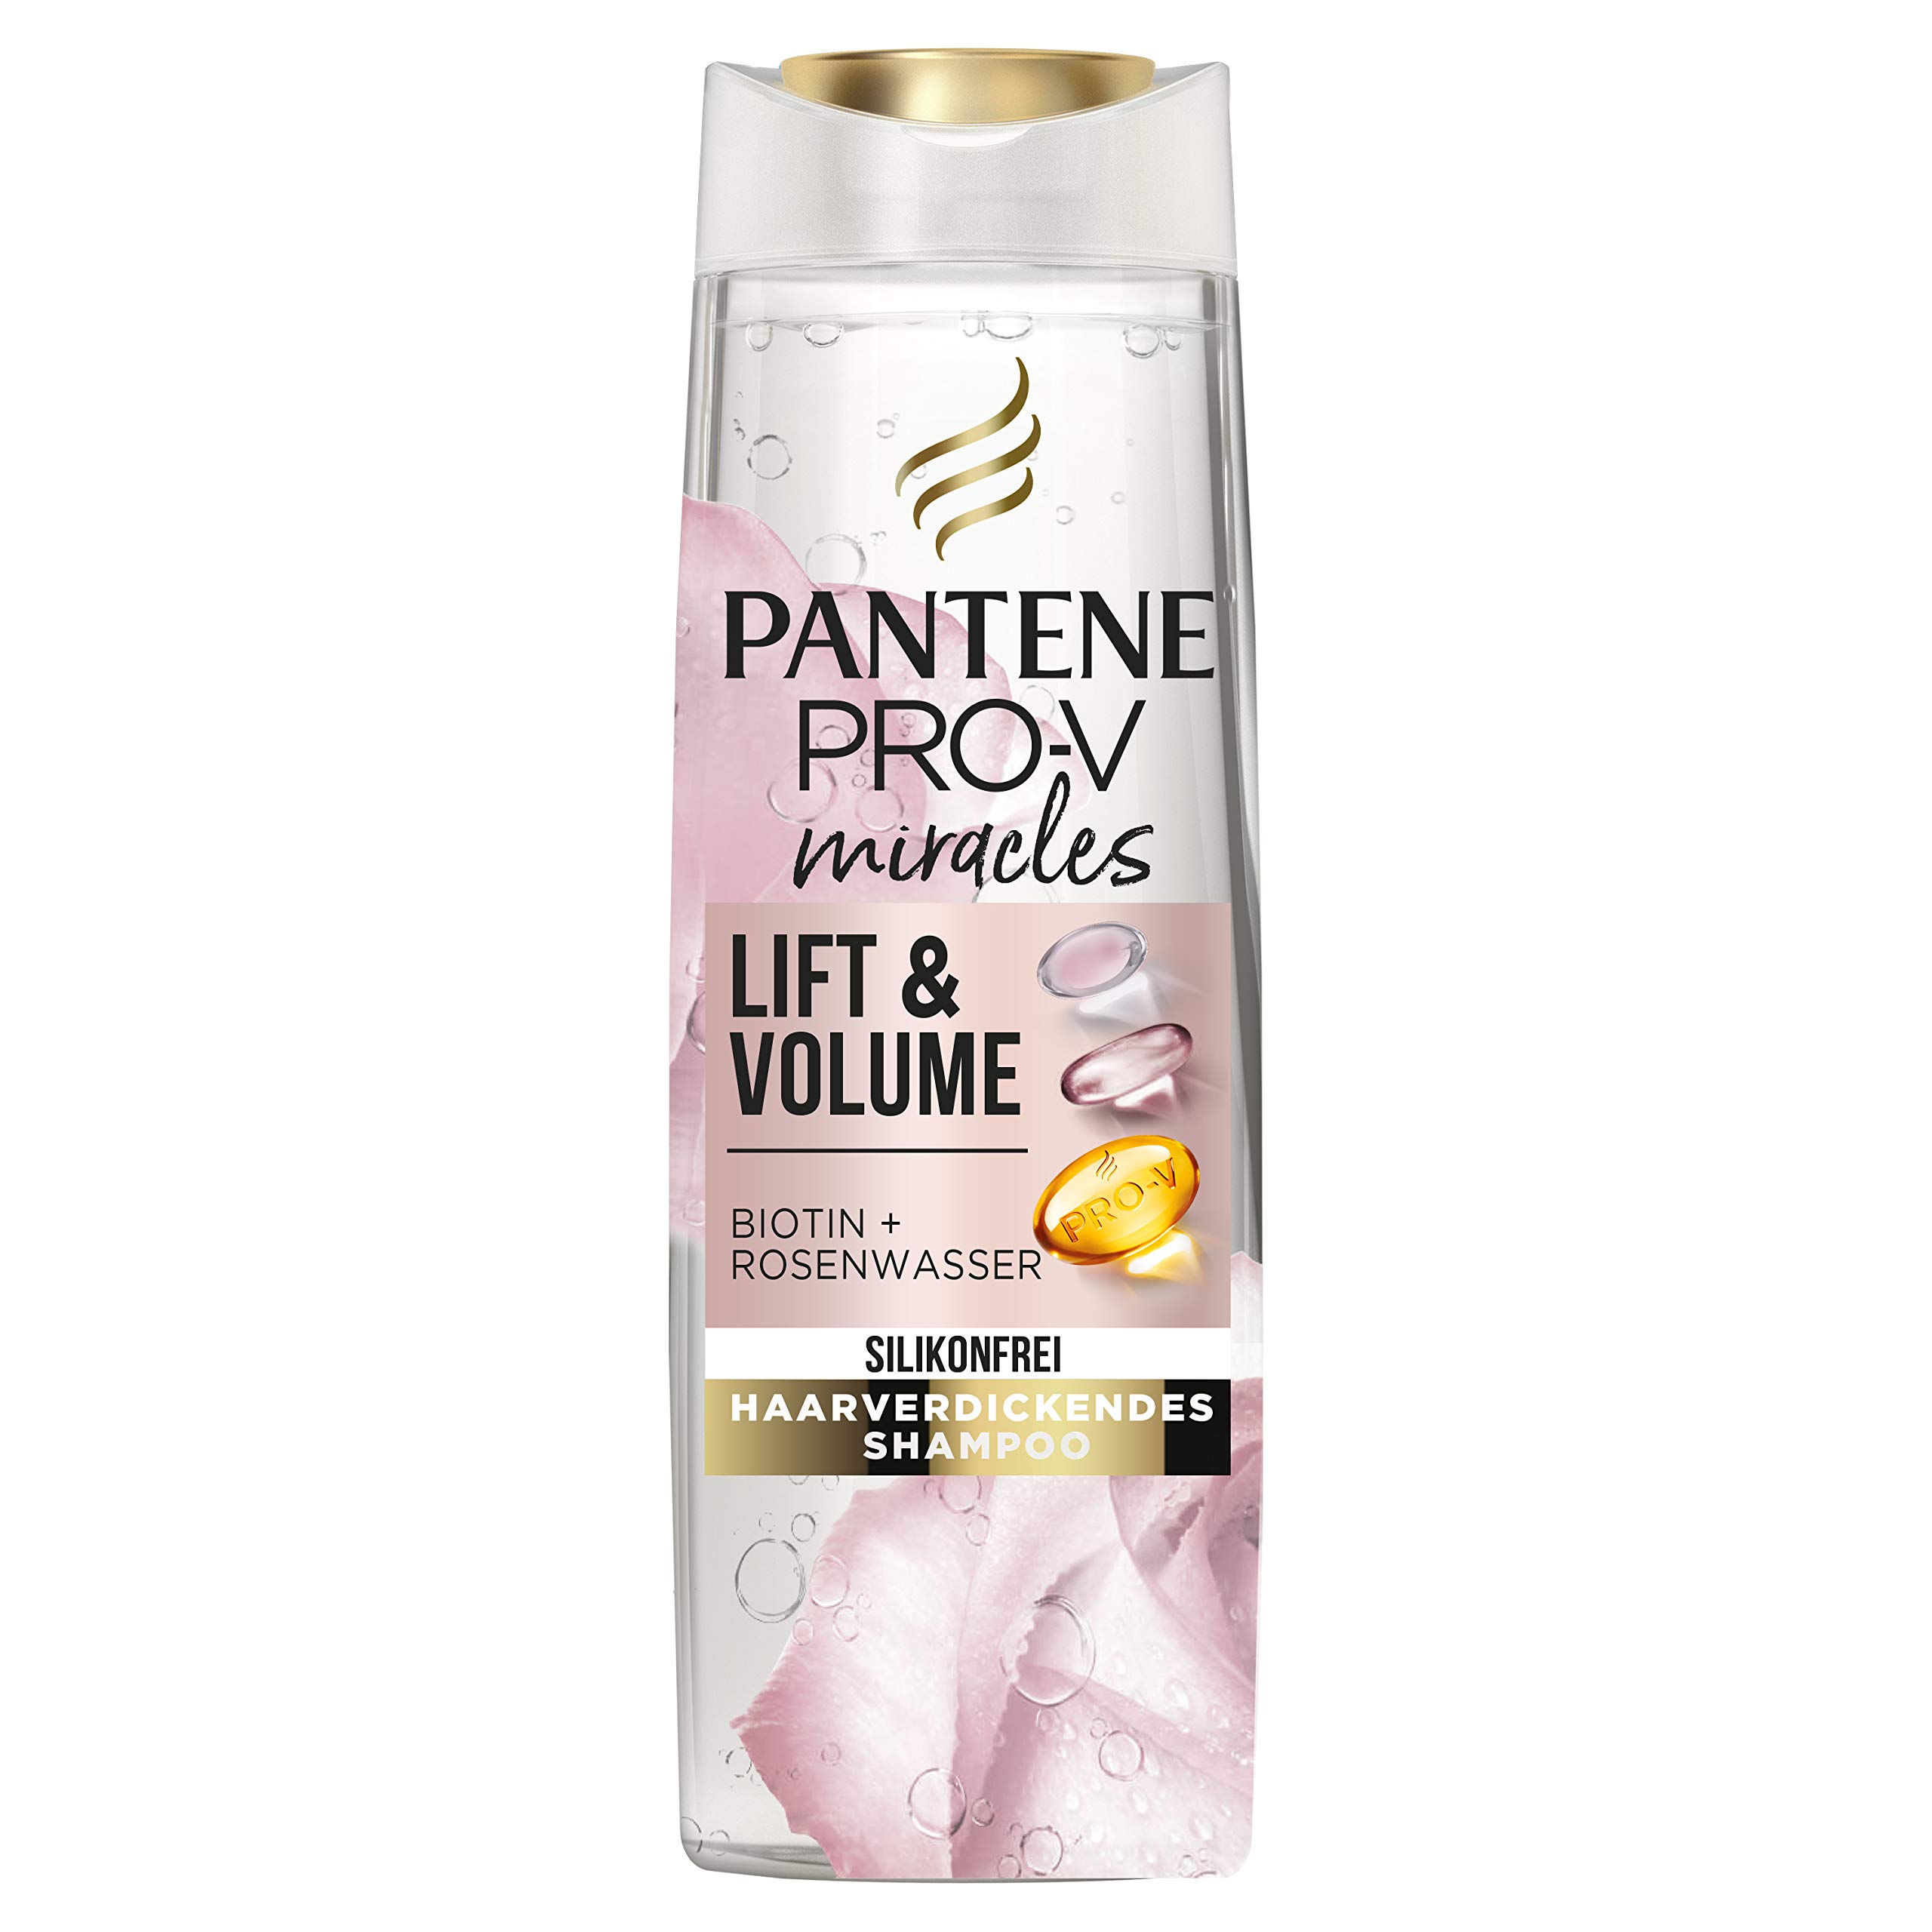 pantene szampon volume 3 w 1 opinie